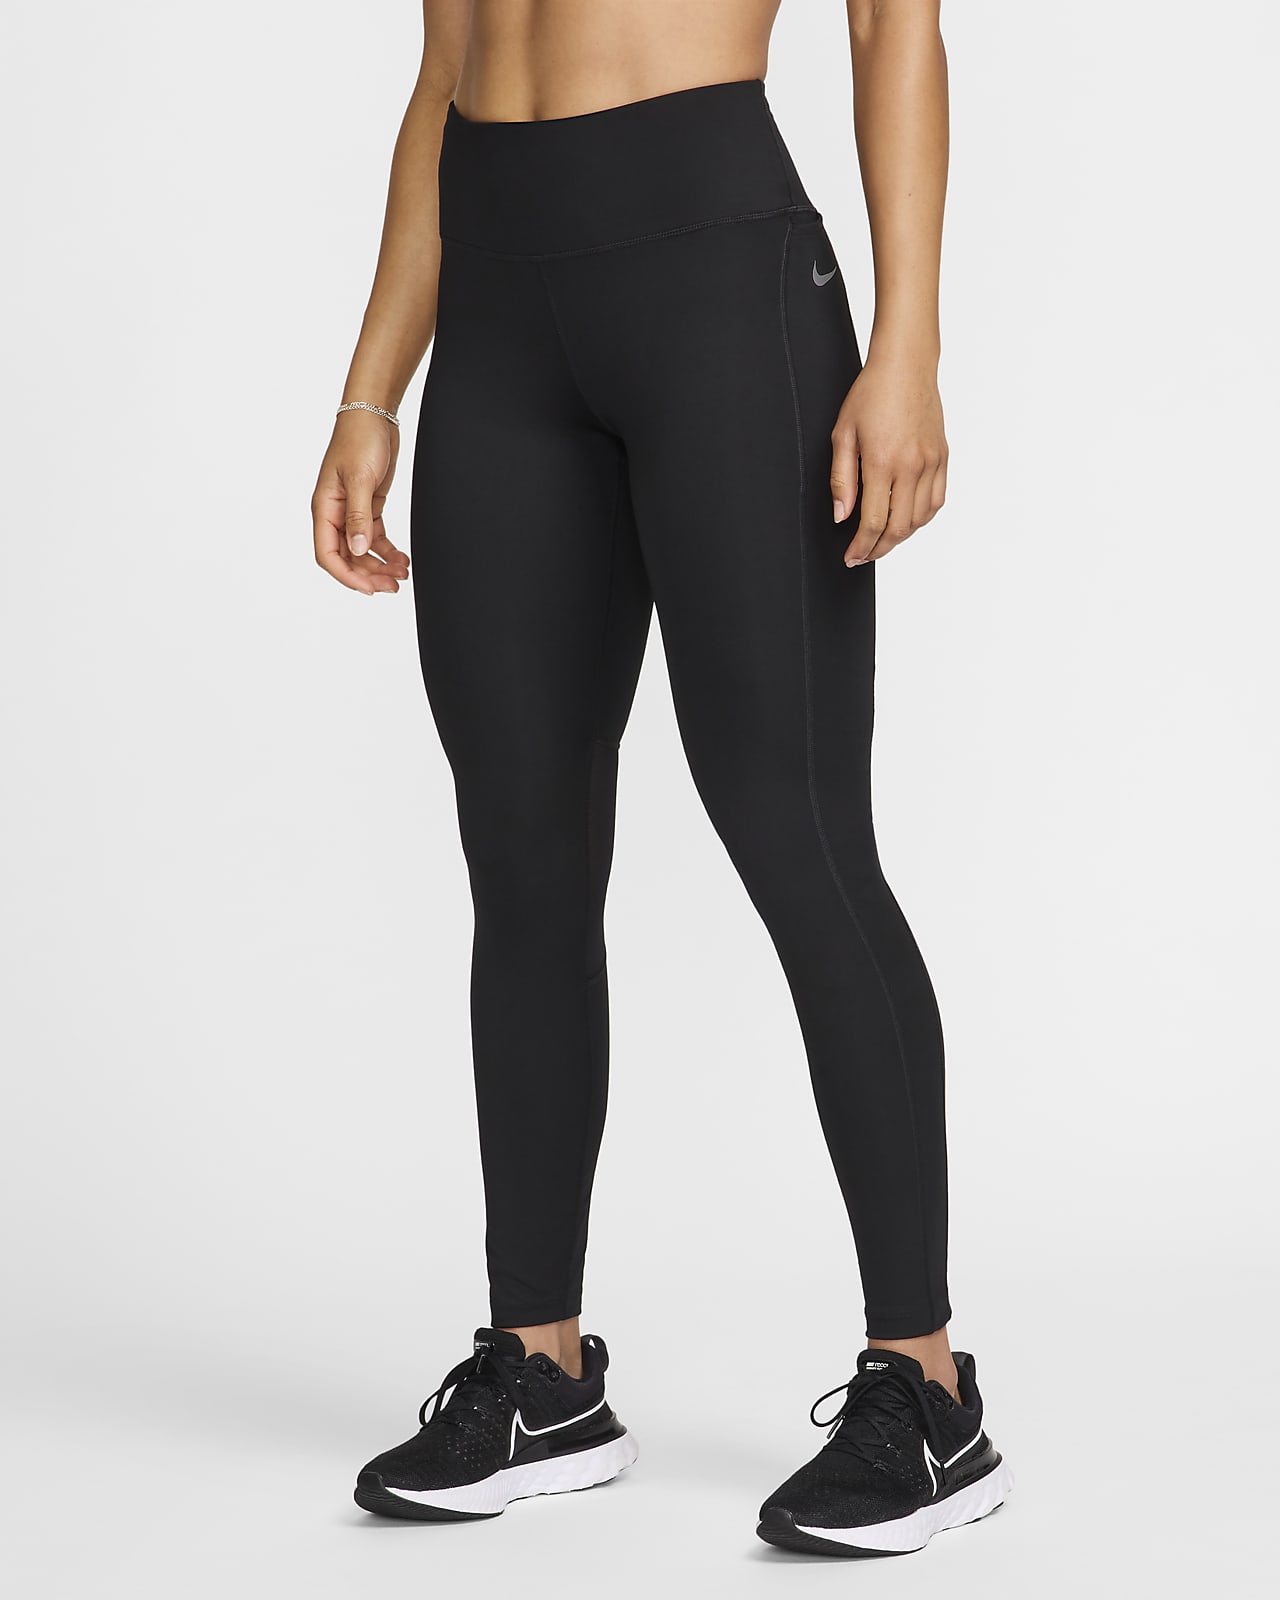 Damskie legginsy do biegania ze średnim stanem i kieszenią Nike Epic Fast